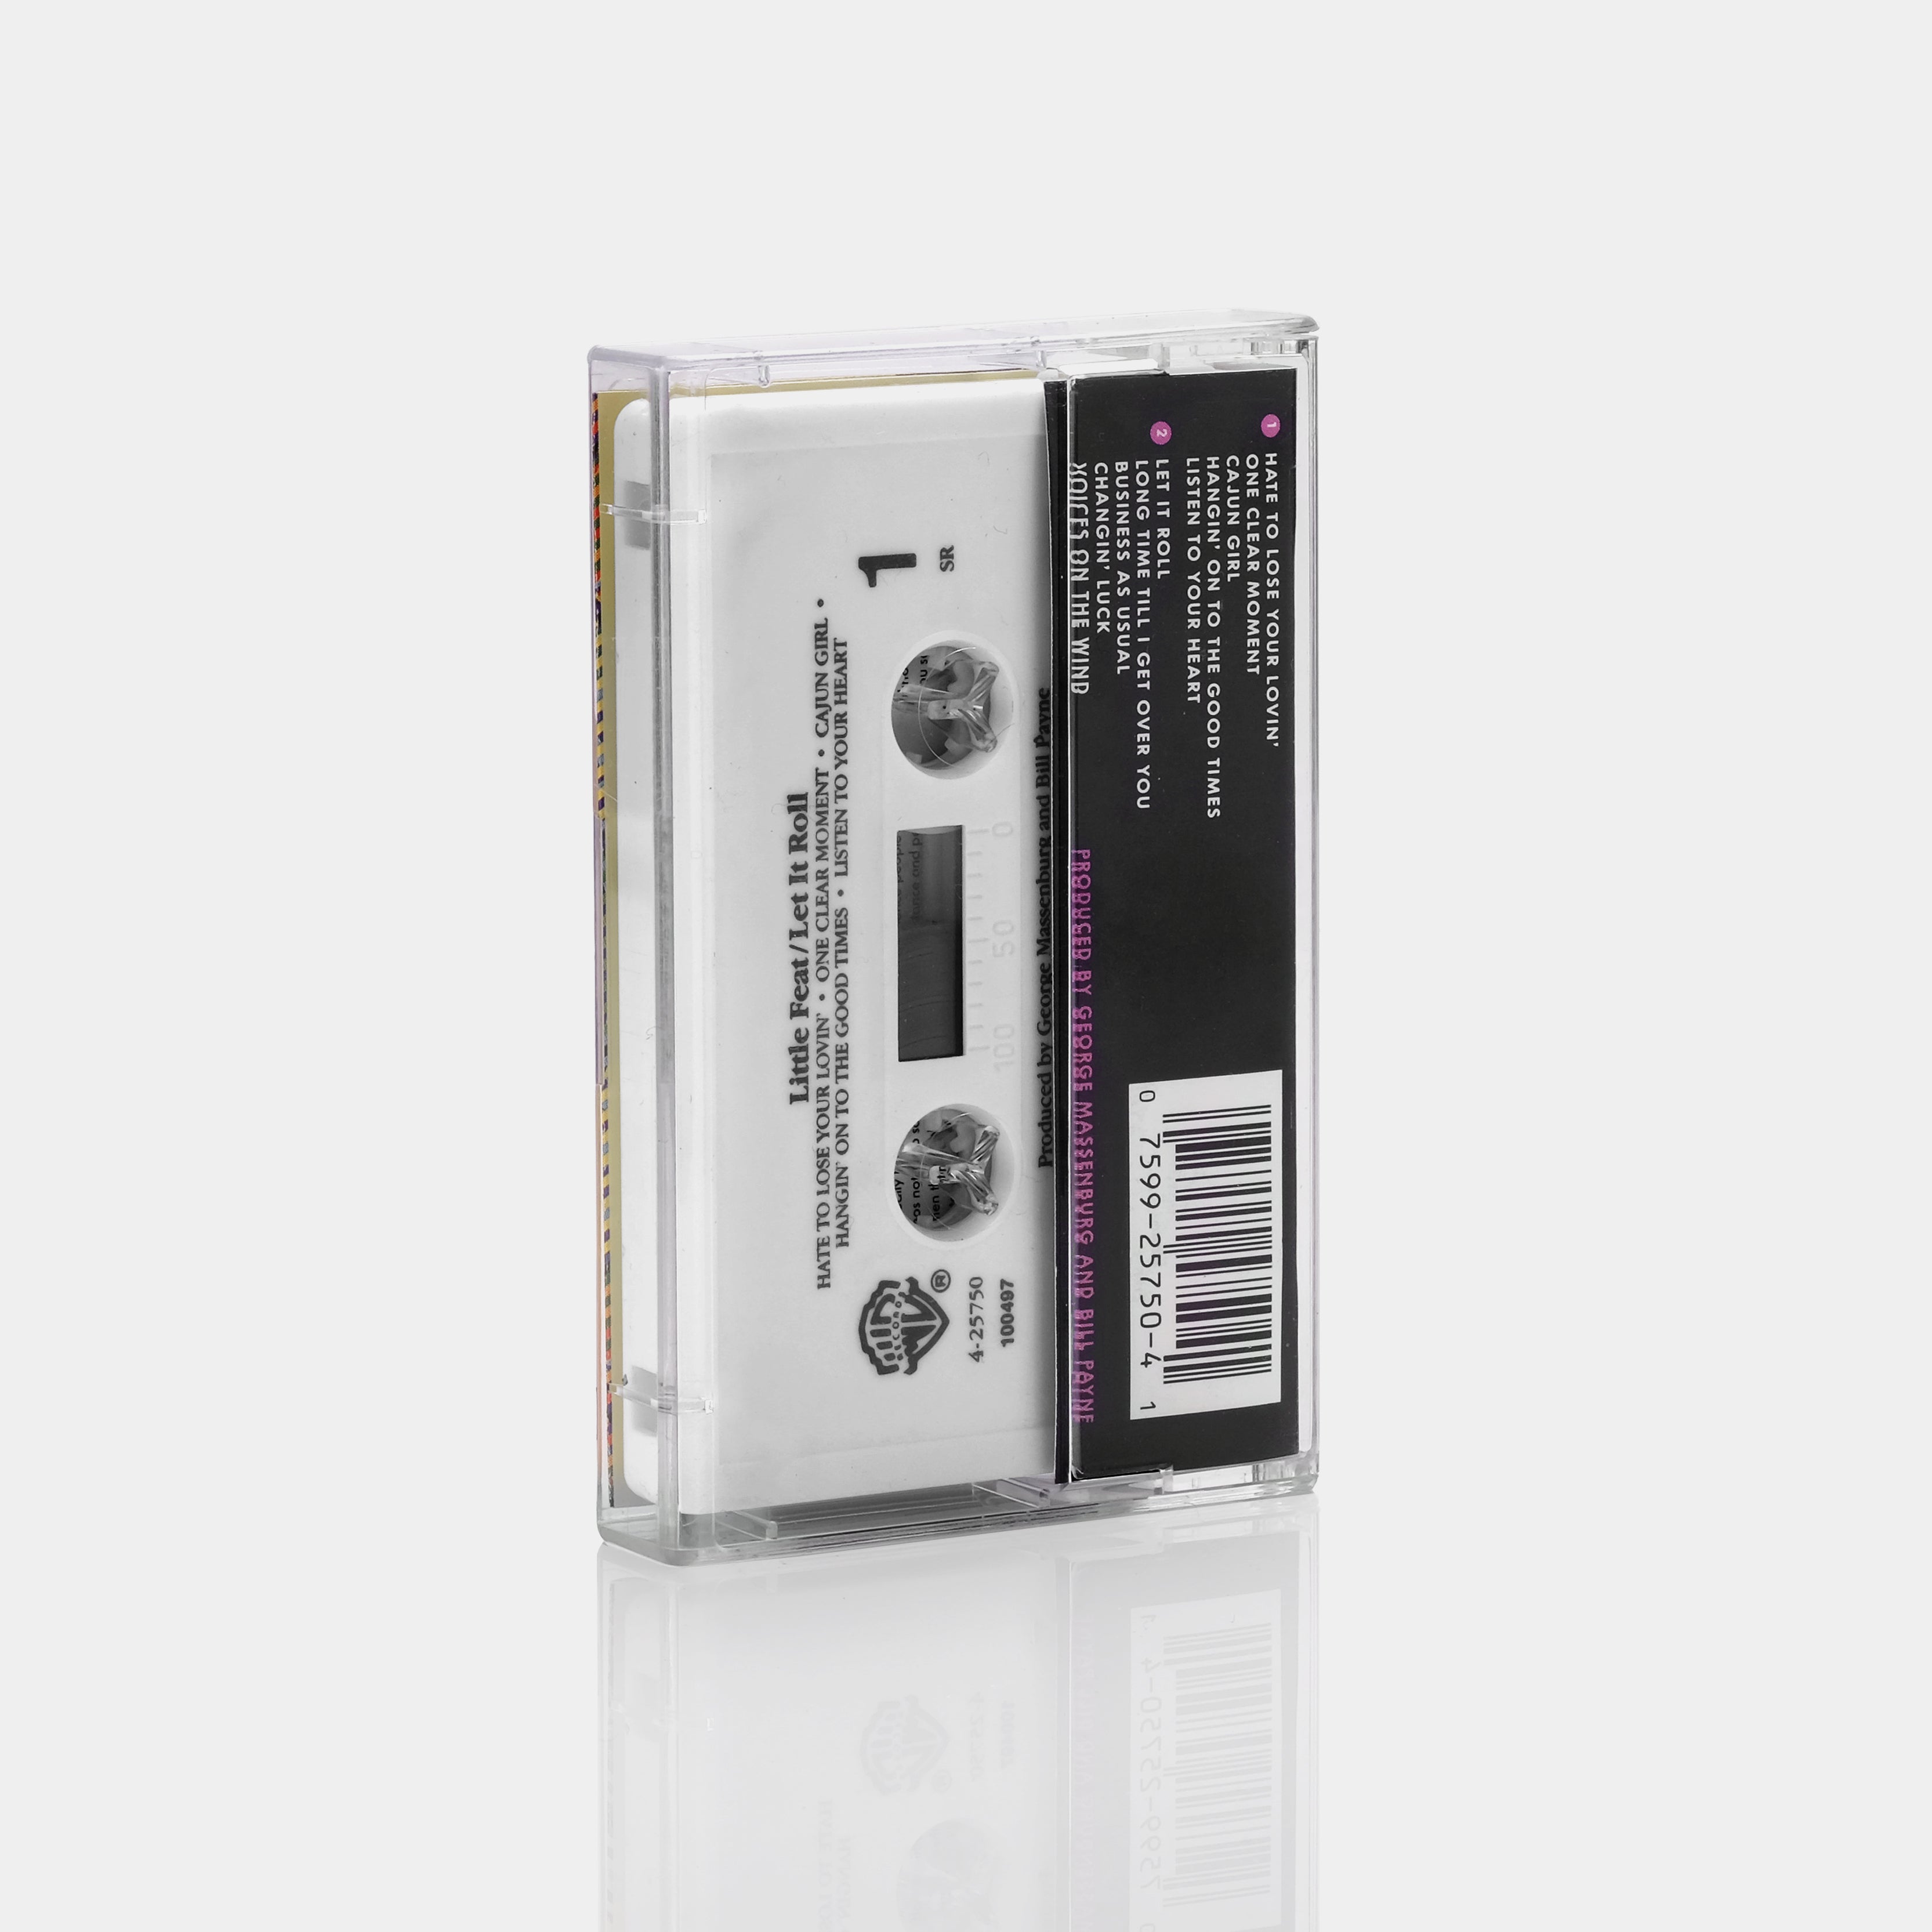 Little Feat - Let It Roll Cassette Tape